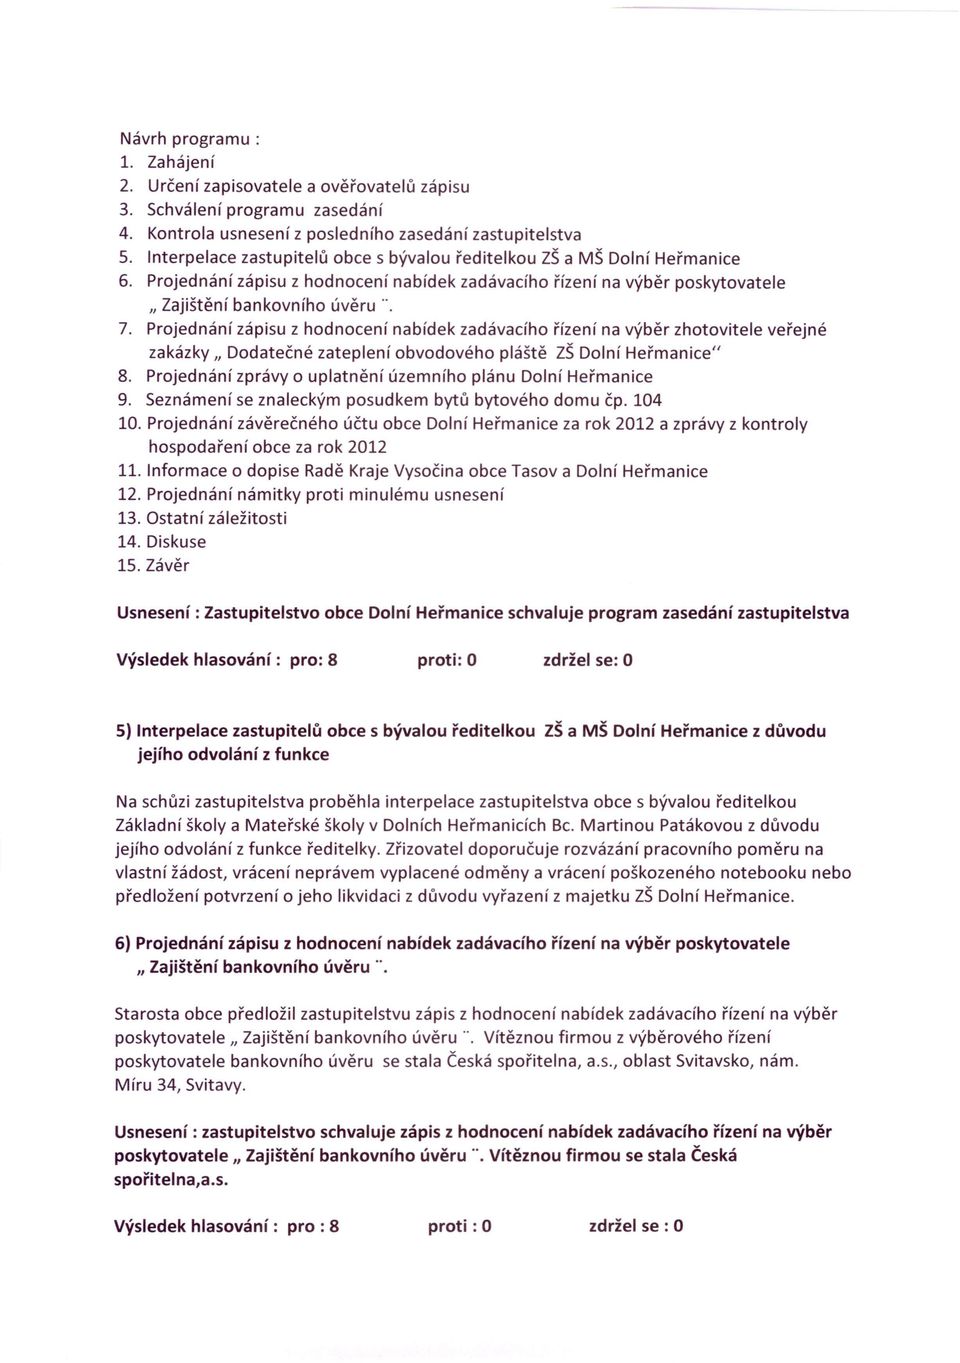 Projednání zápisu z hodnocení nabídek zadávacího řízení na výběr zhotovitele veřejné zakázky II Dodatečné zateplení obvodového pláště ZŠ Dolní Heřmanice" 8.